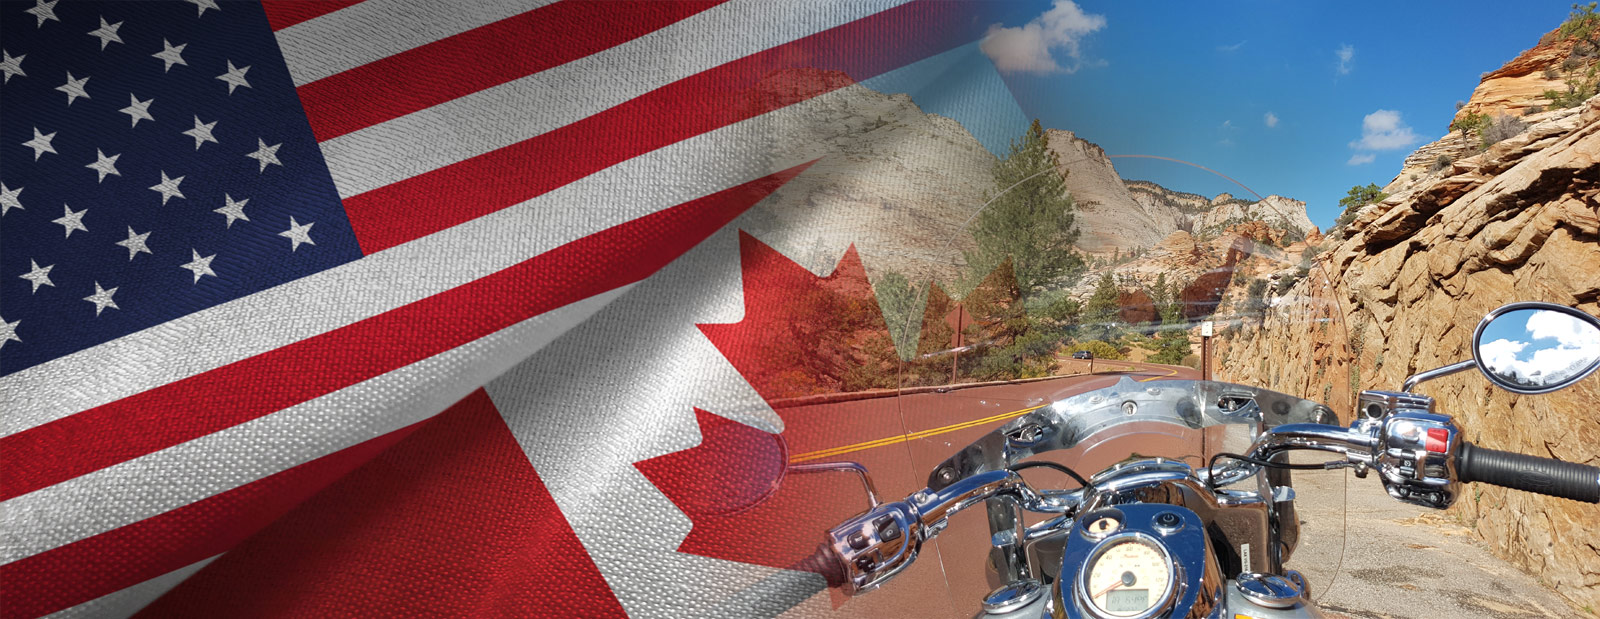 amerika motorcycle tours